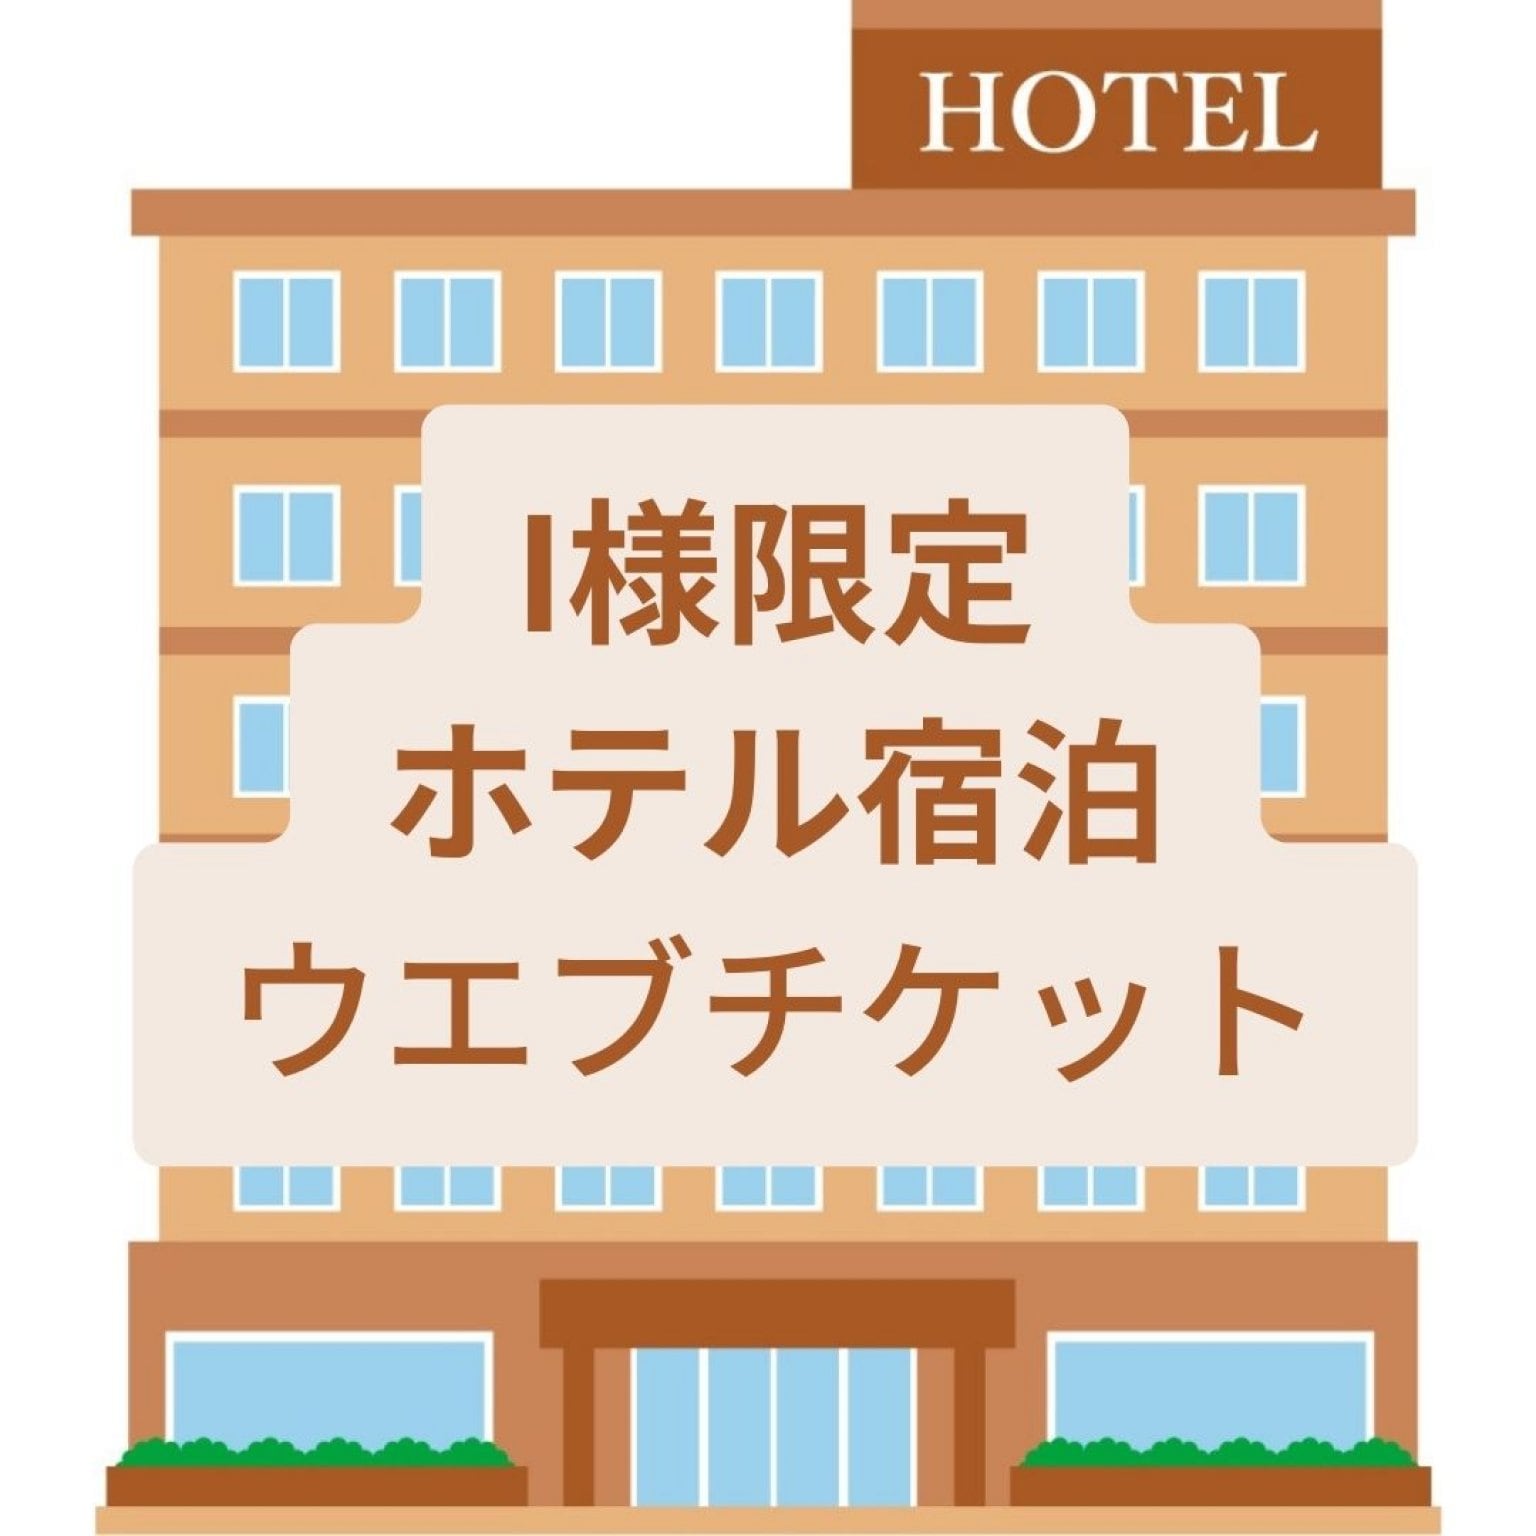 【I 様限定】軽井沢ホテル宿泊